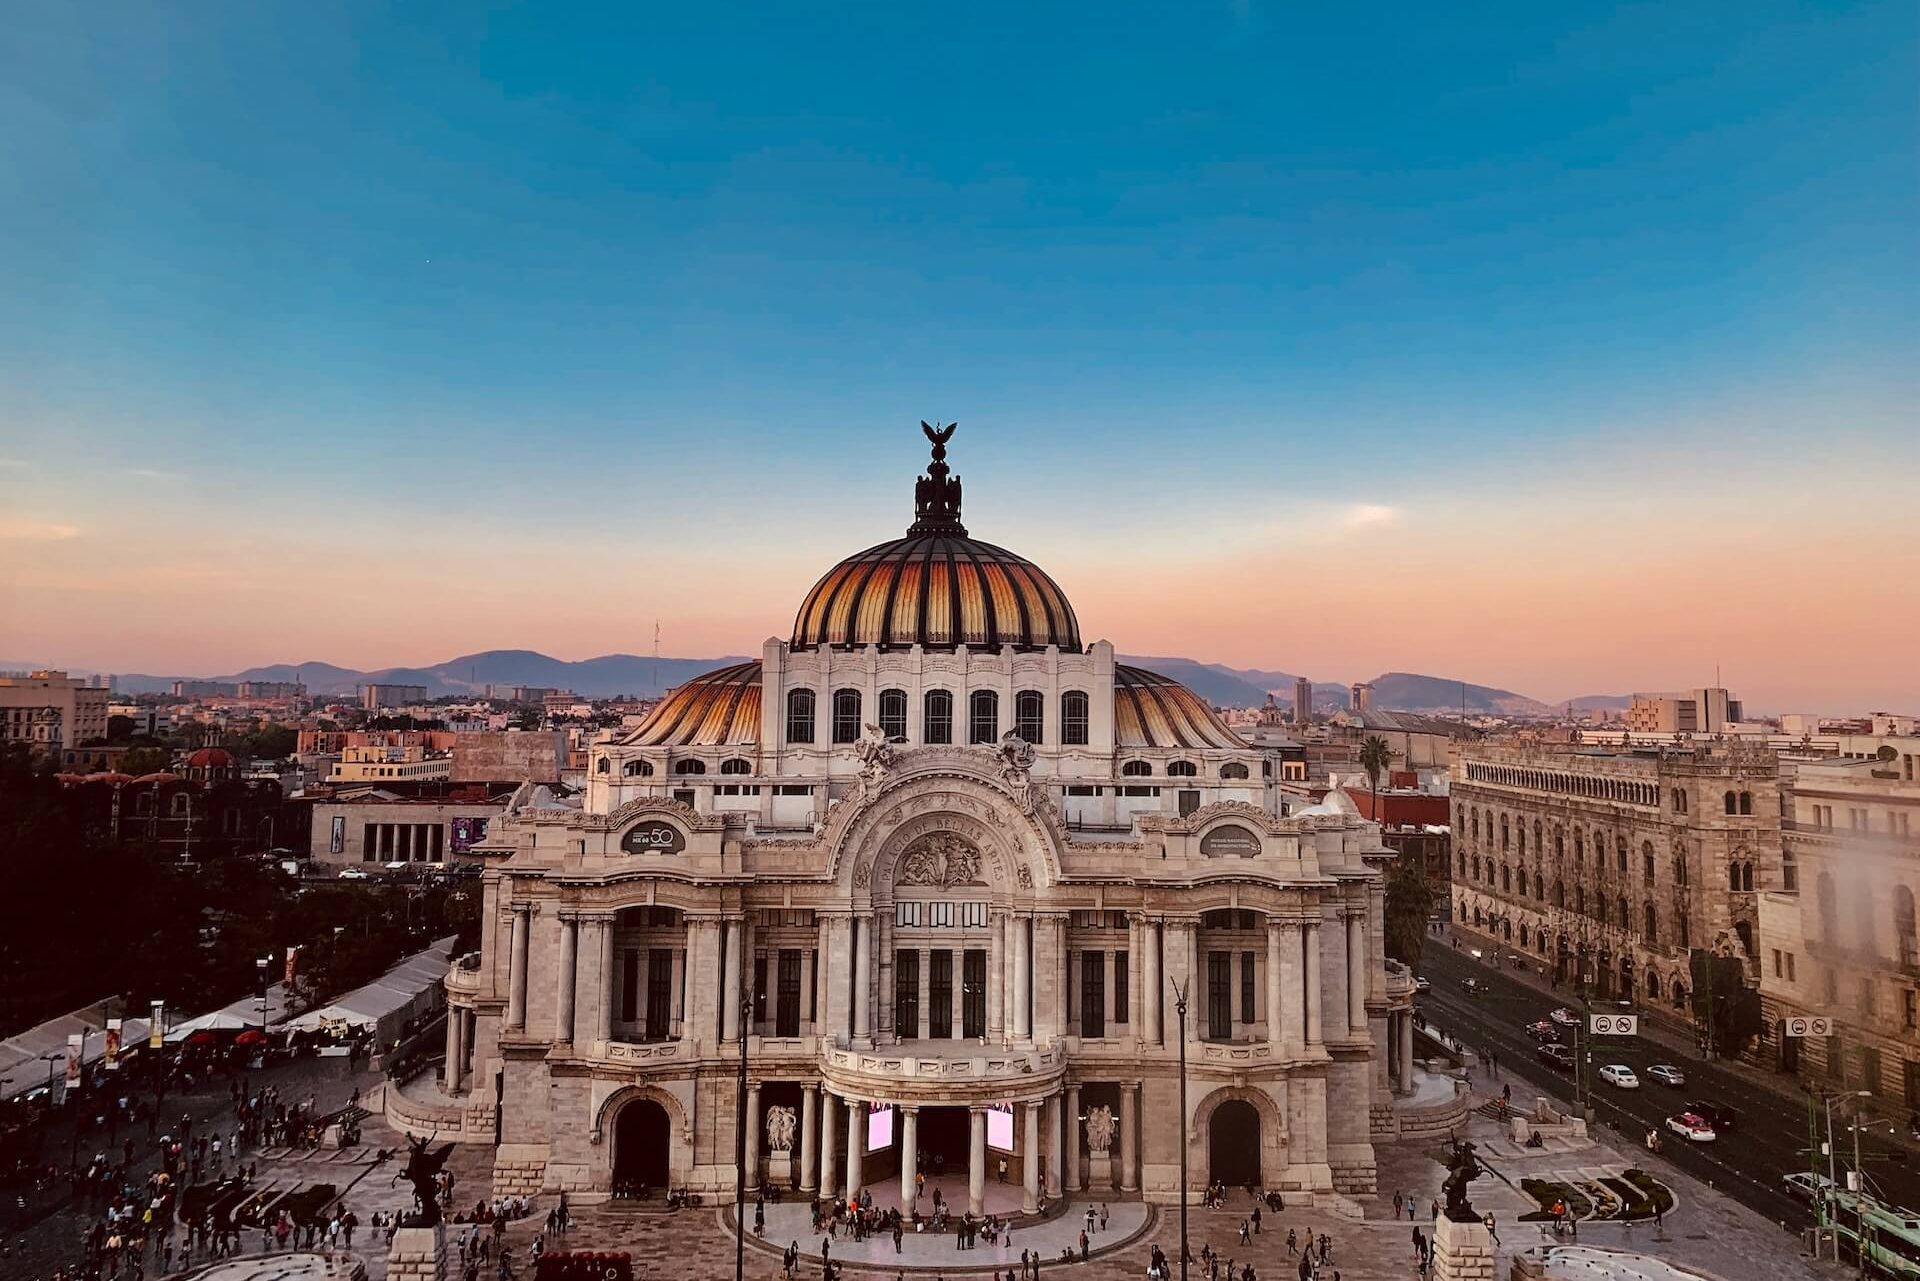 Palacio de Bellas Artes in mexico city at sunset